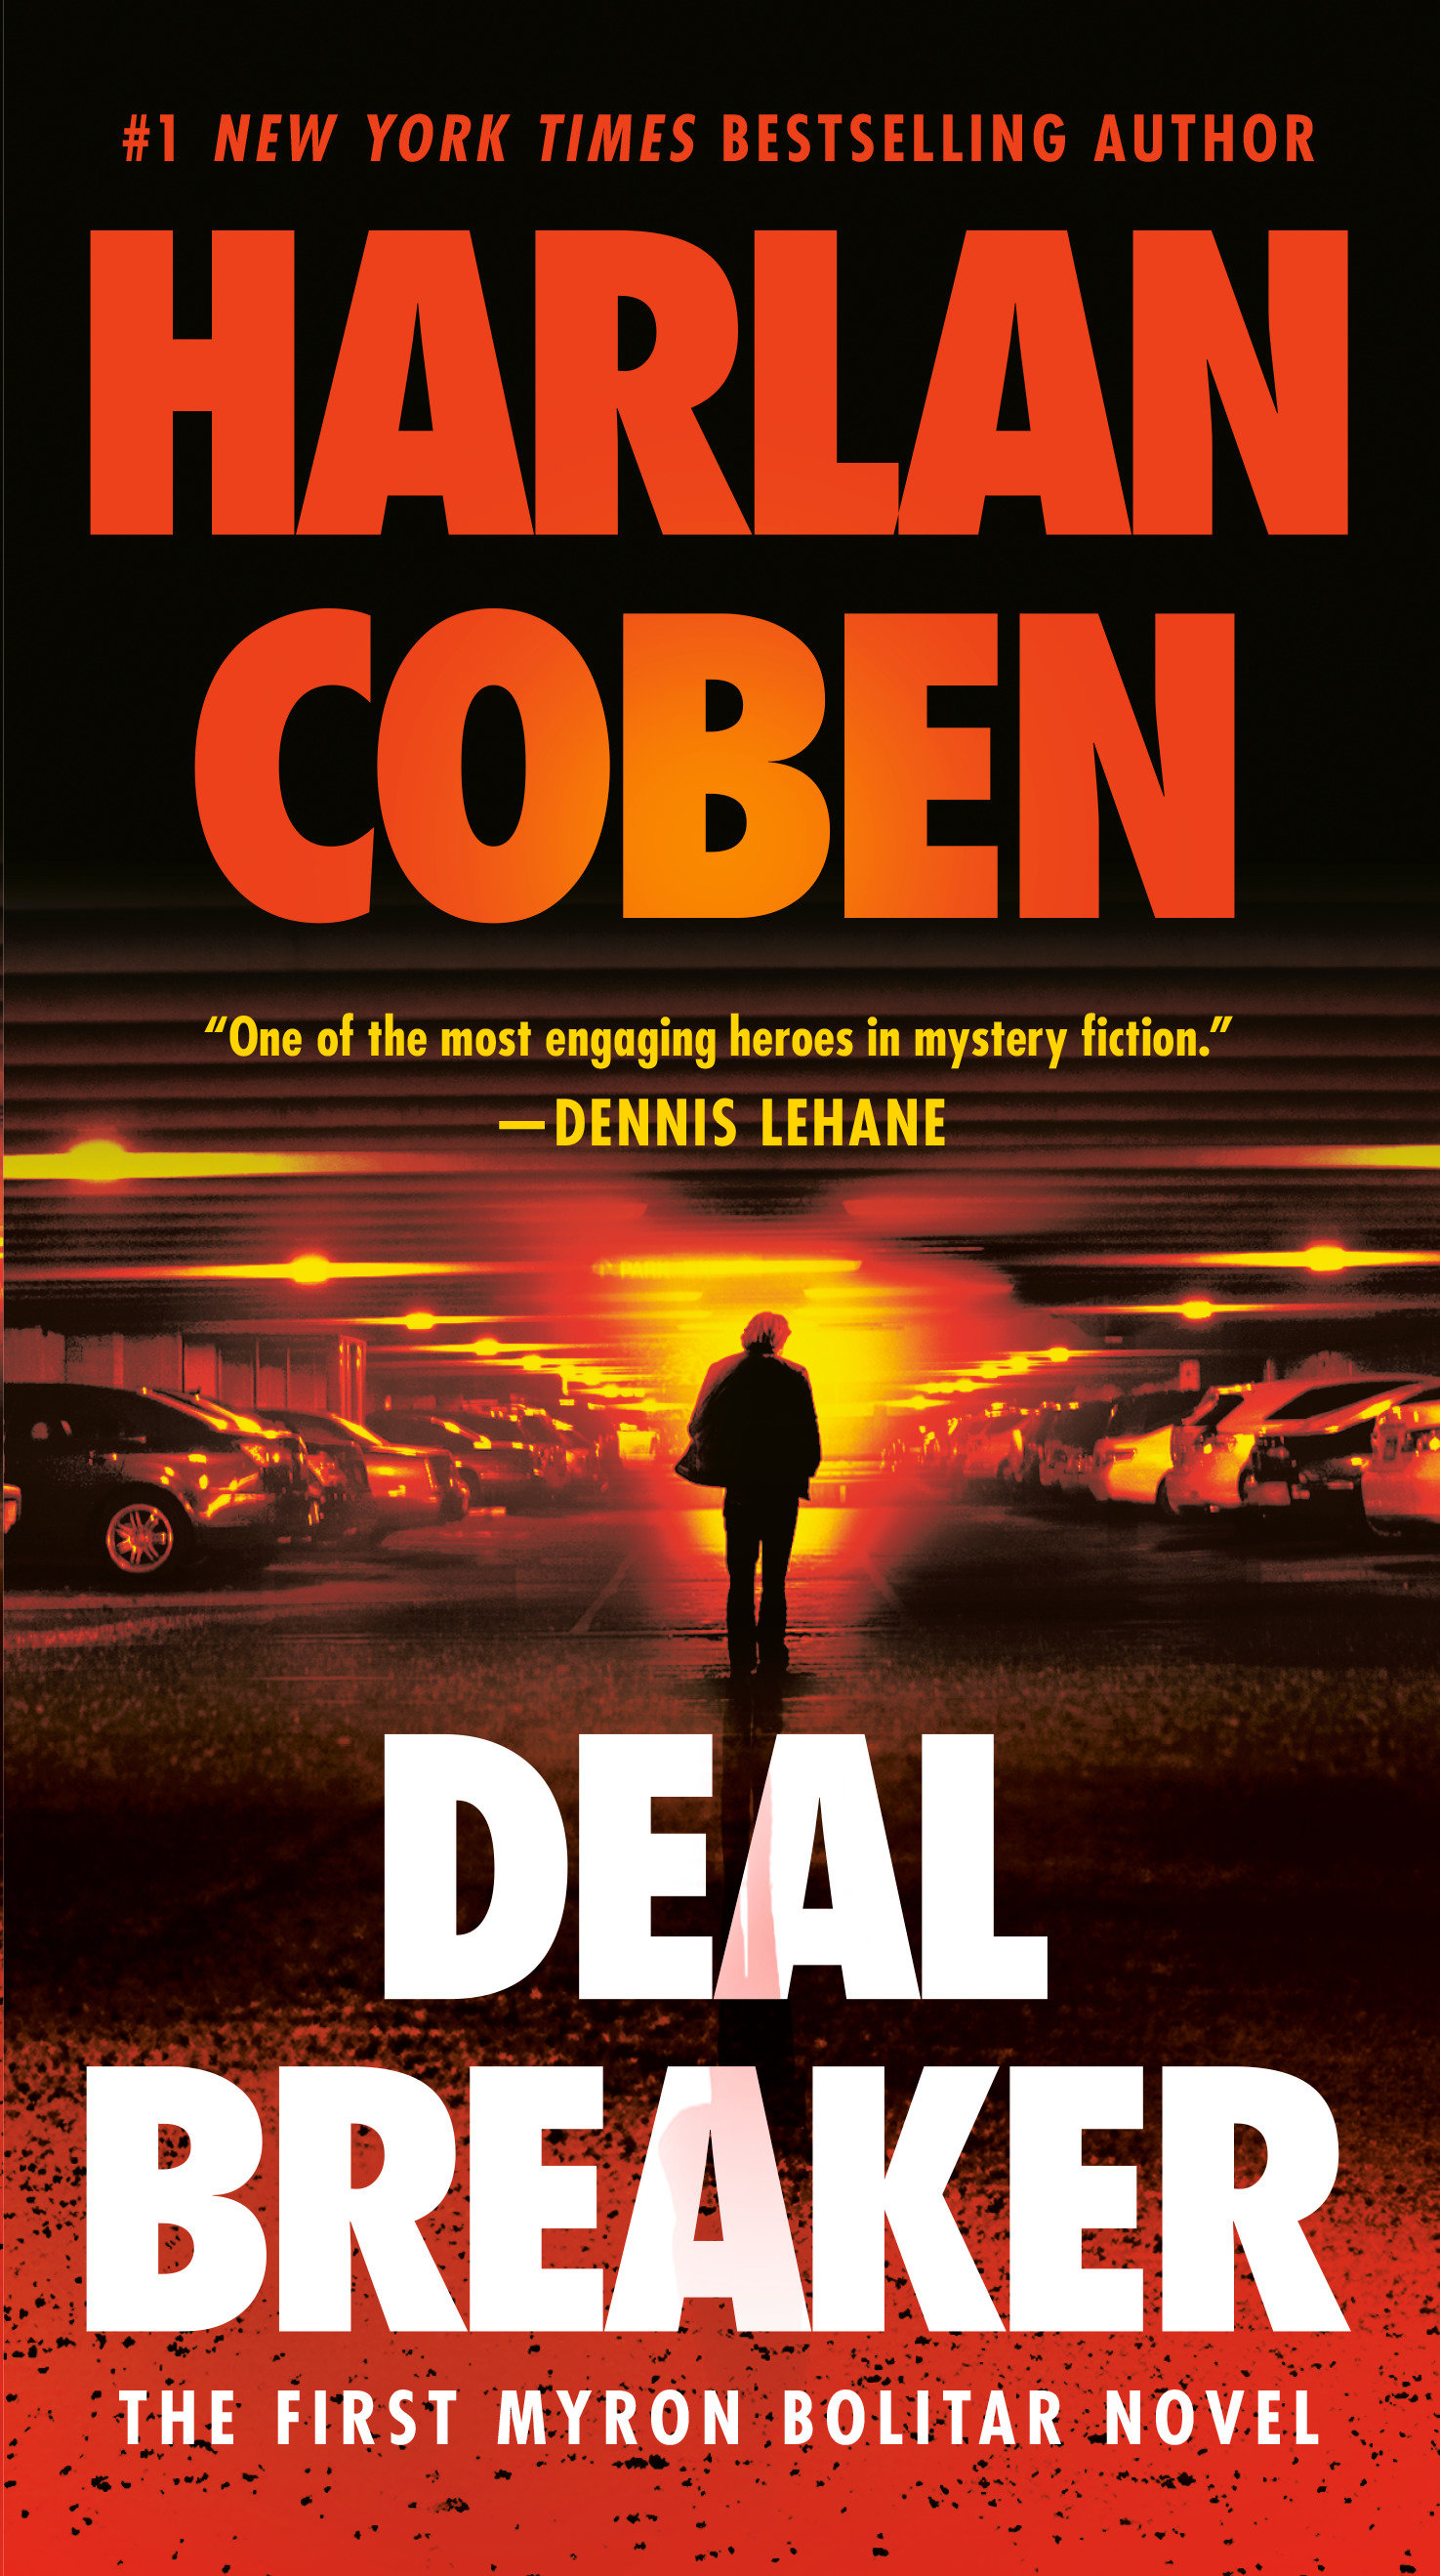 Deal breaker cover image